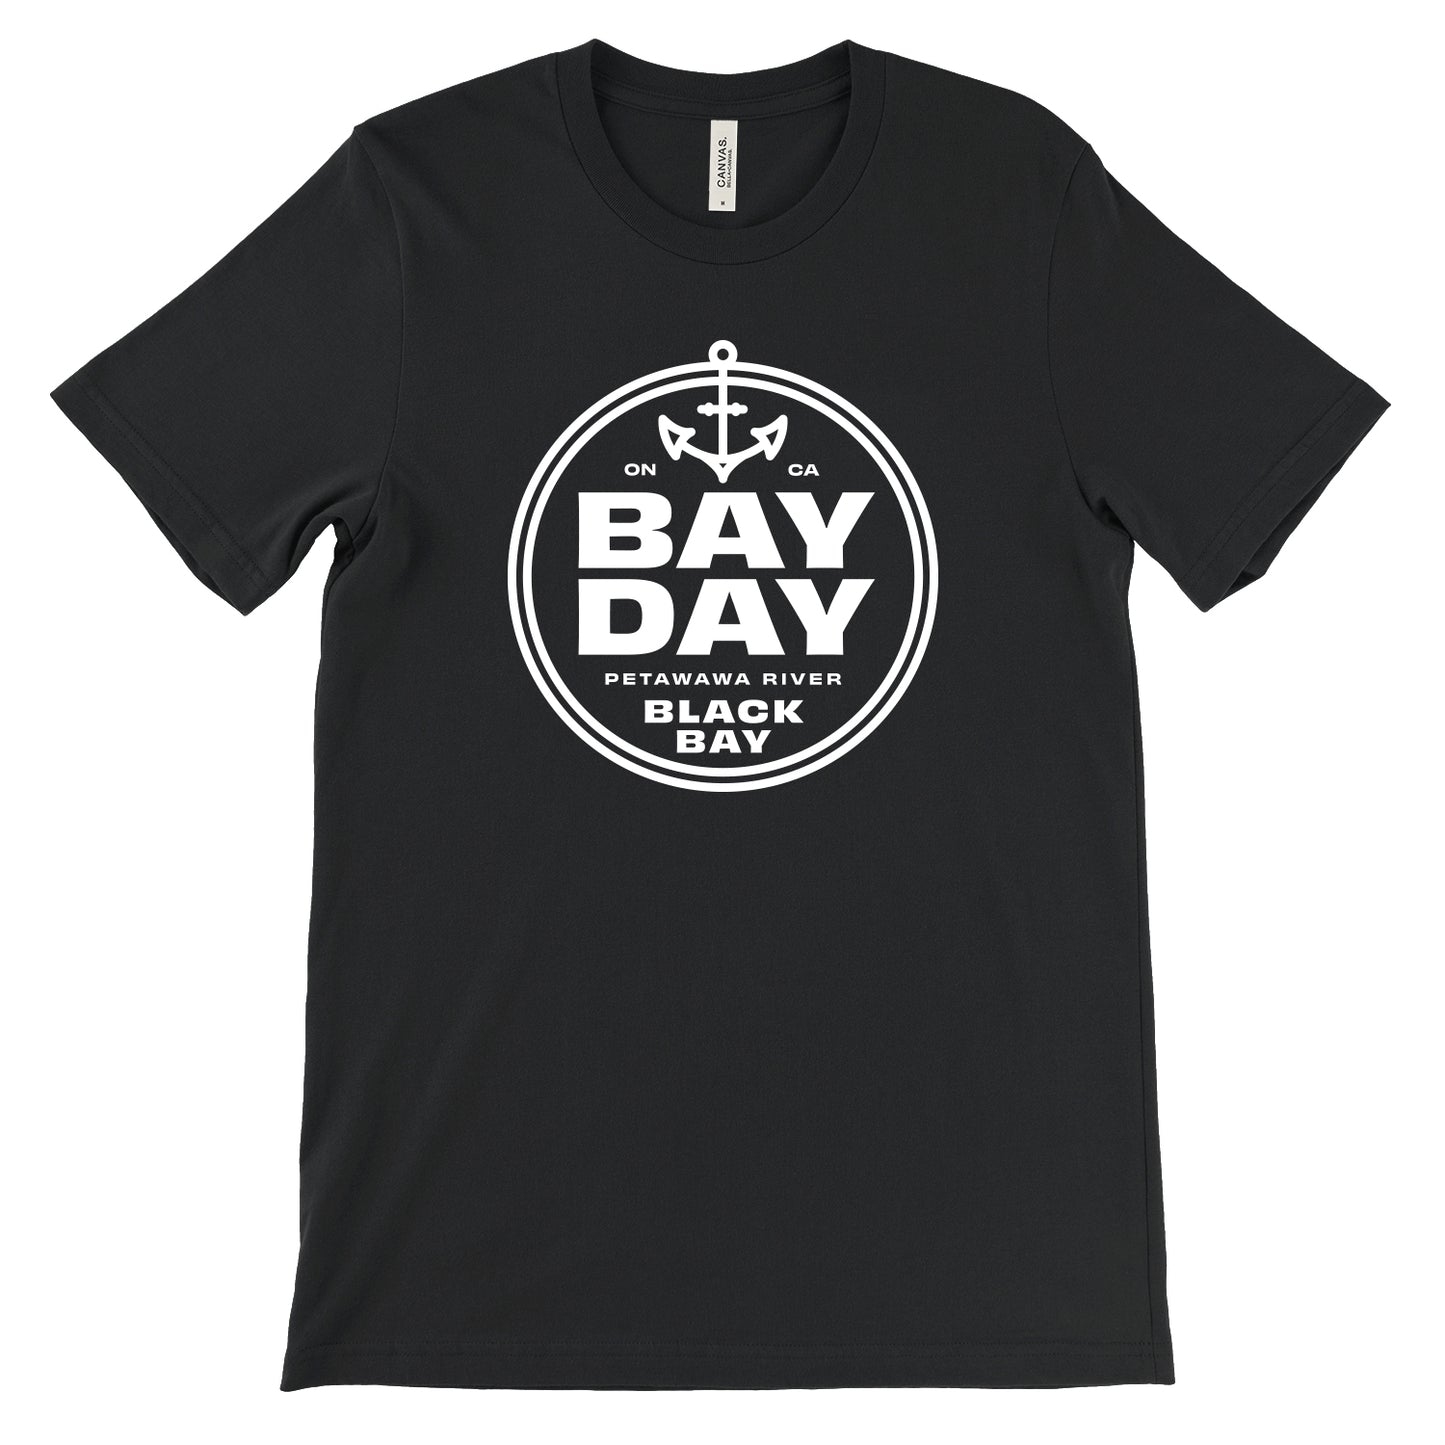 Bay Day Black Bay T-Shirt - Black - Unisex